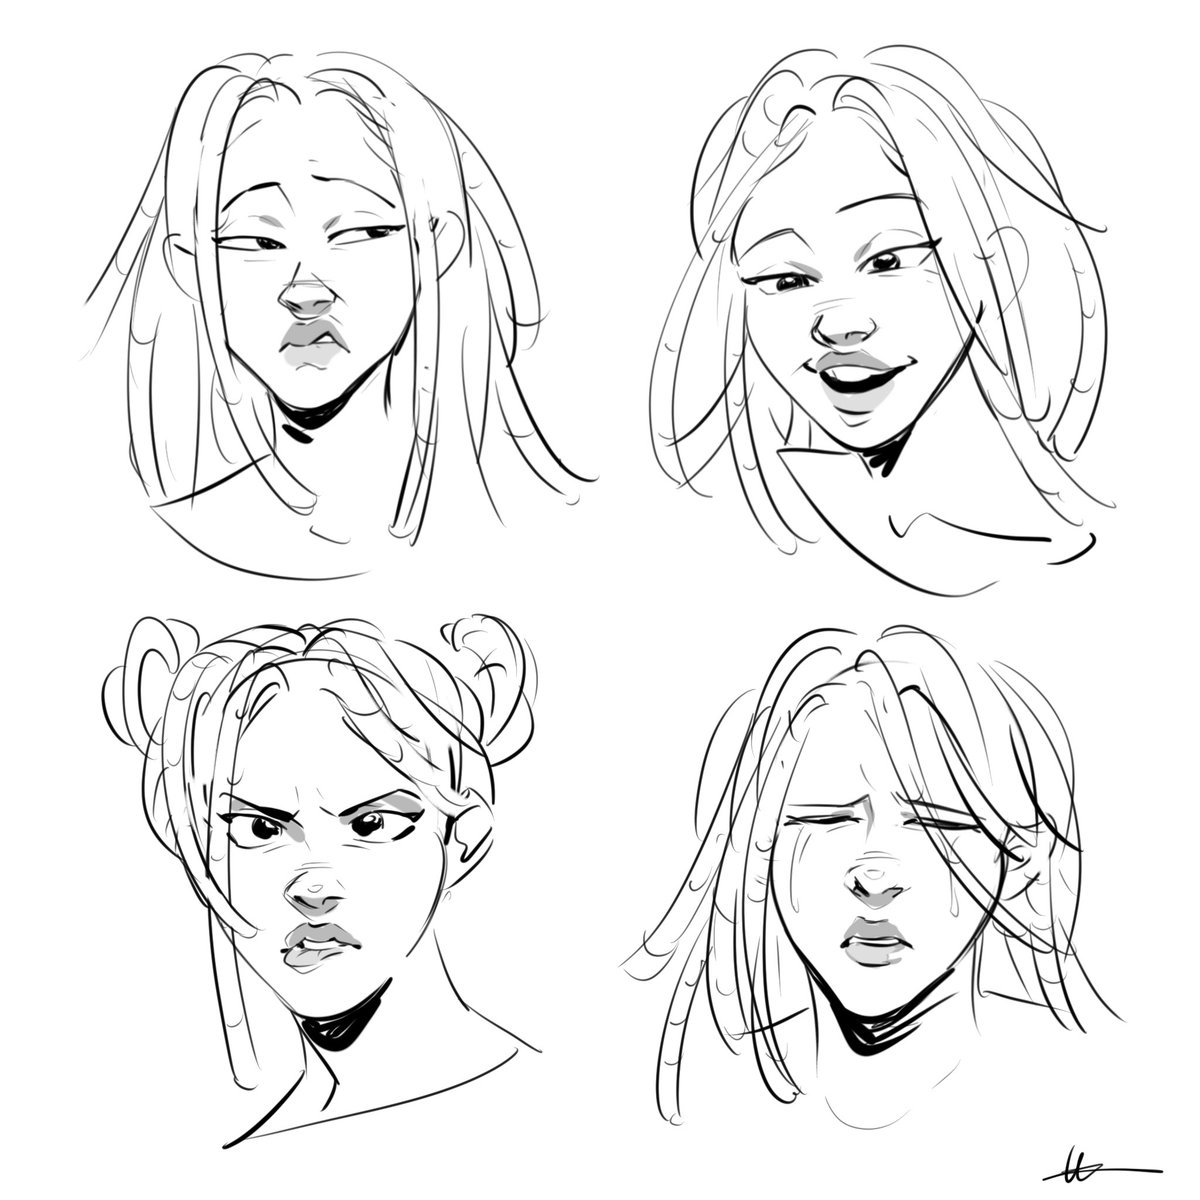 [oc] Joël face expressions study 🌷 